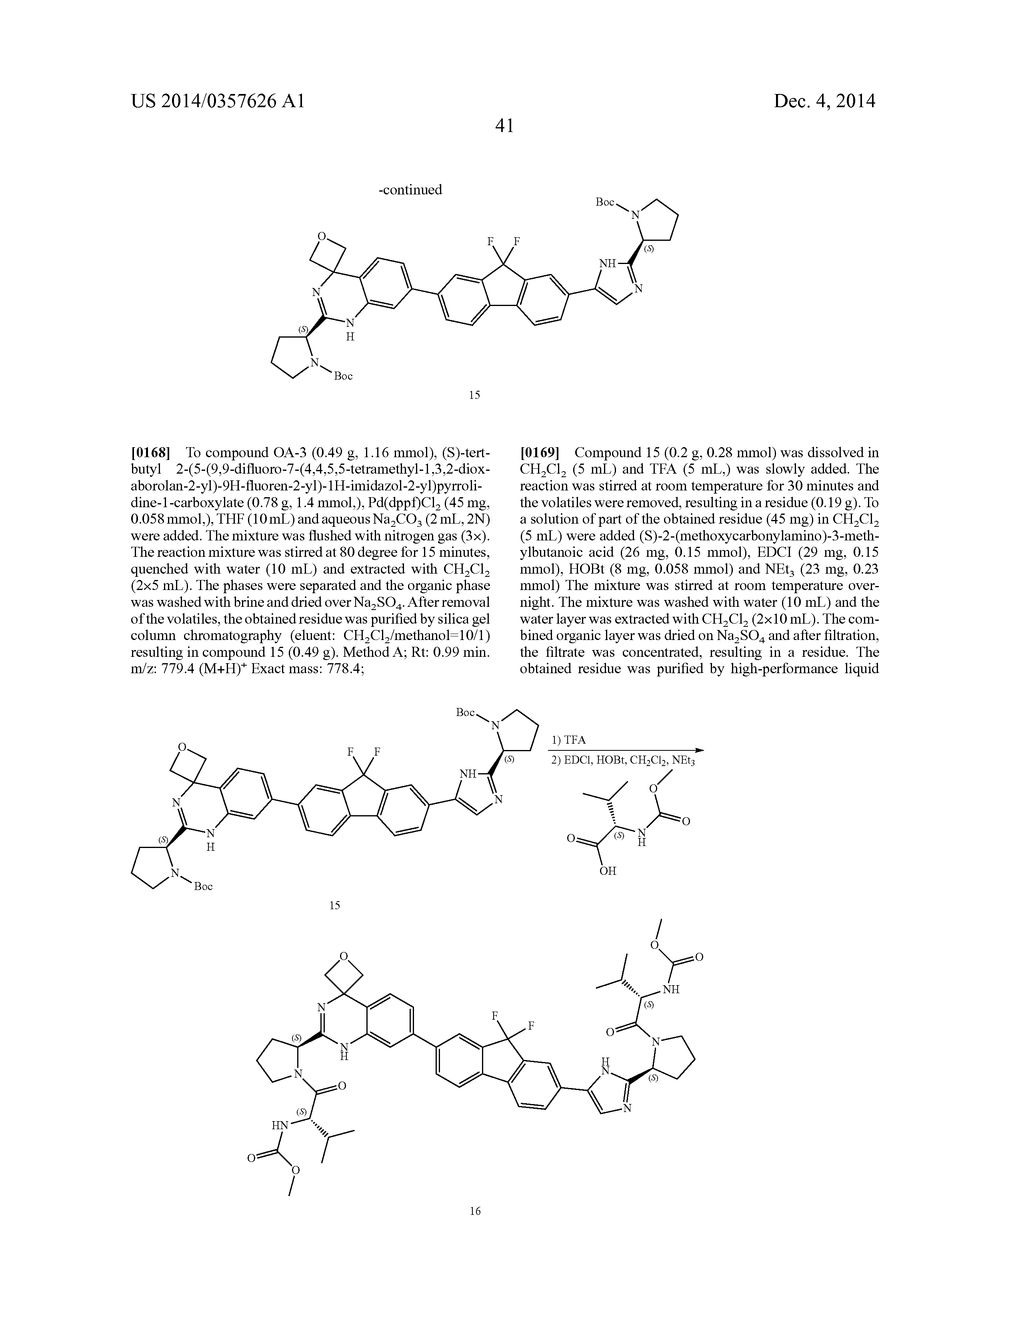 Hetero-Bicyclic Derivatives As HCV Inhibitors - diagram, schematic, and image 42